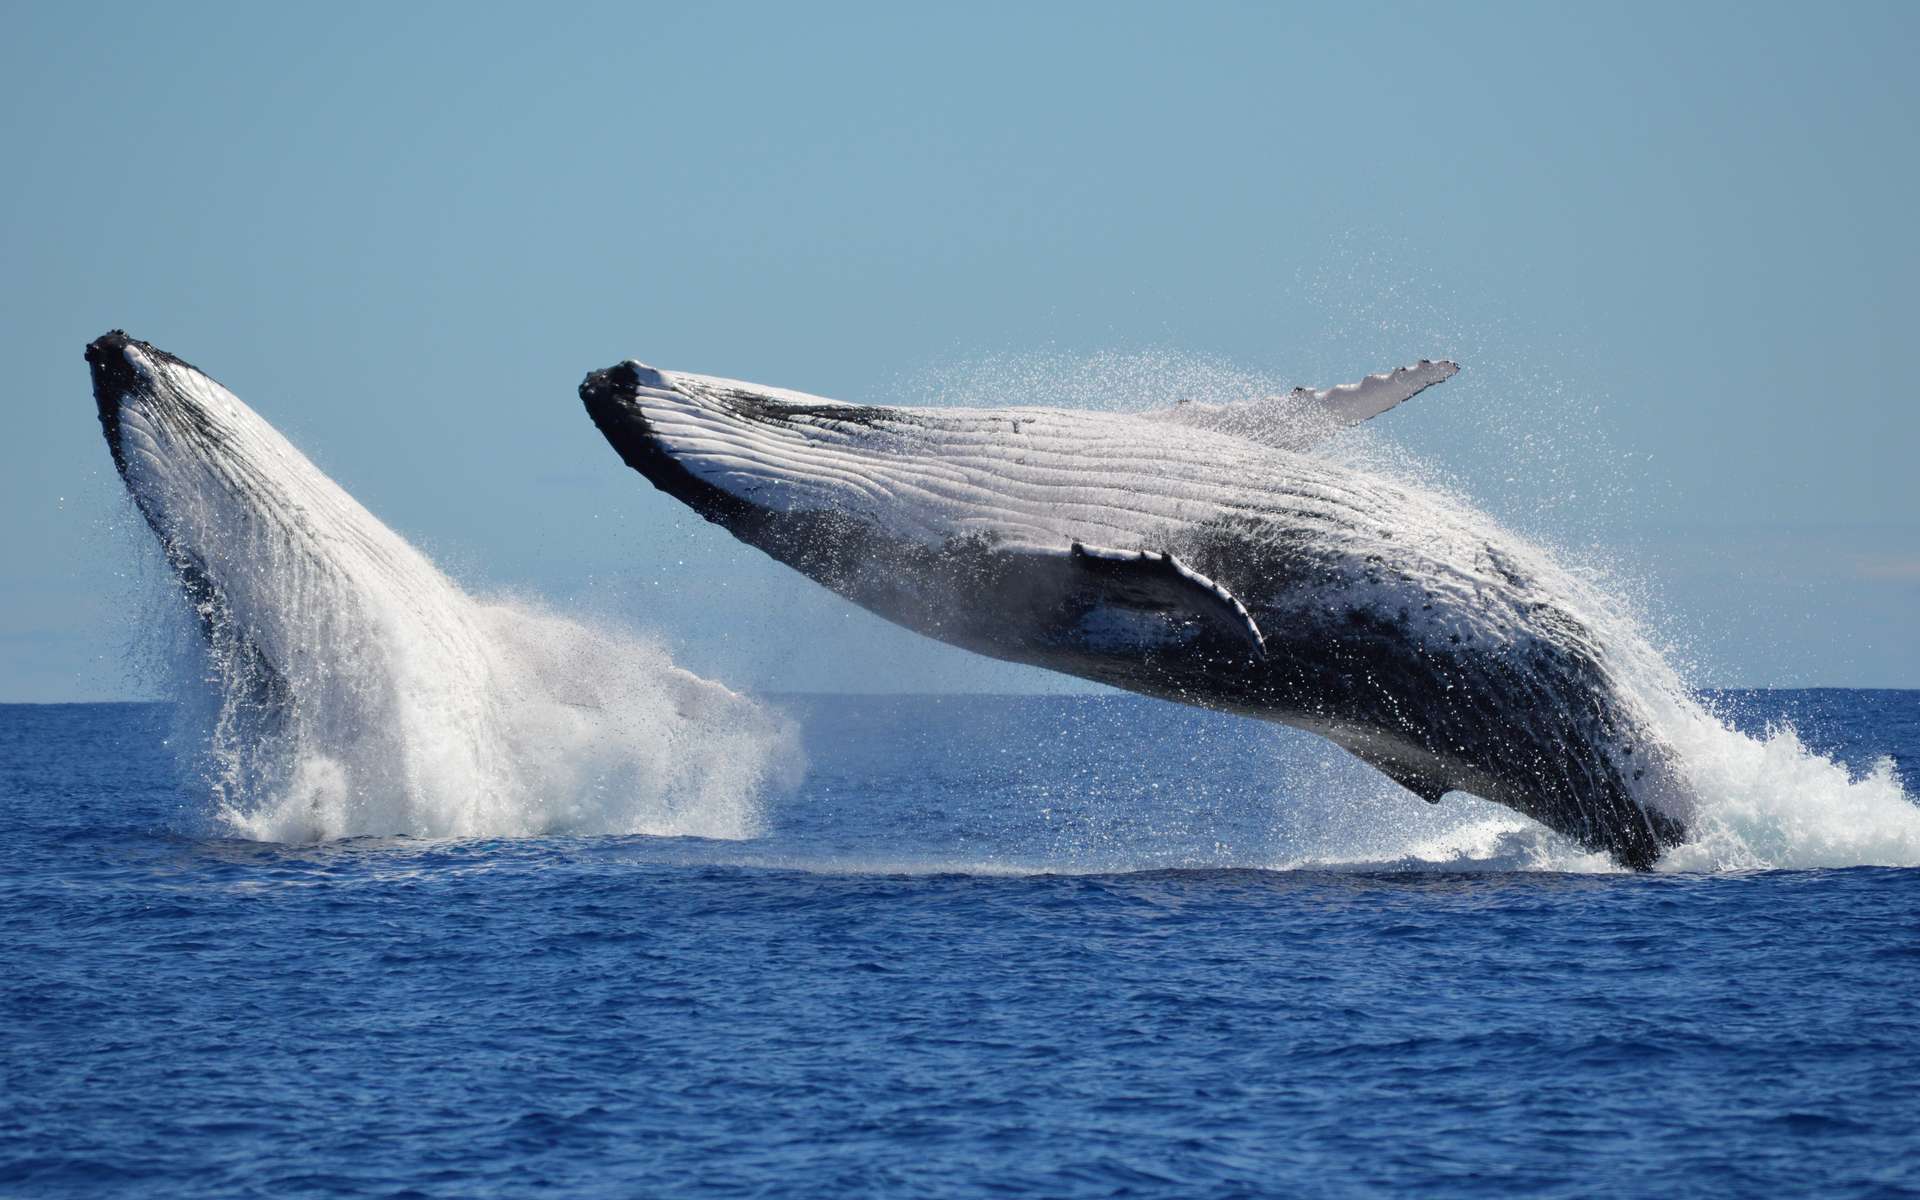 Ces images de la danse amoureuse entre 2 baleines à bosse sont une première à plus d'un titre !